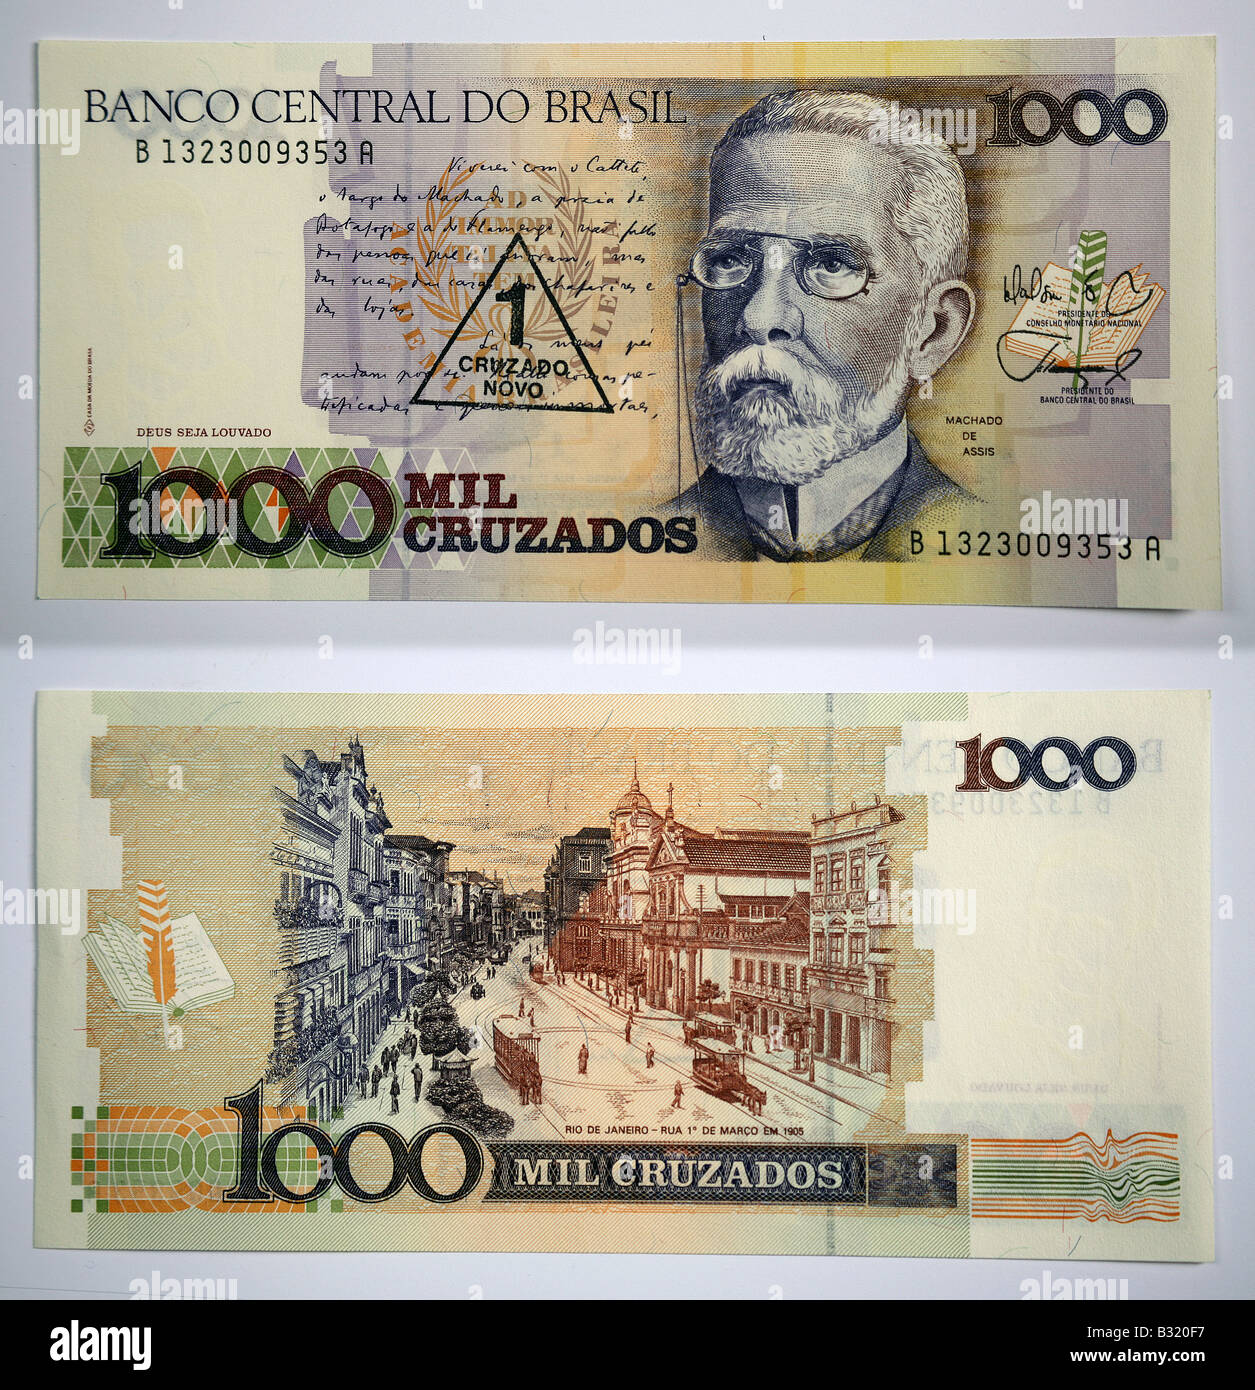 La moneda brasileña Banco Central do Brasil 1000 Foto de stock